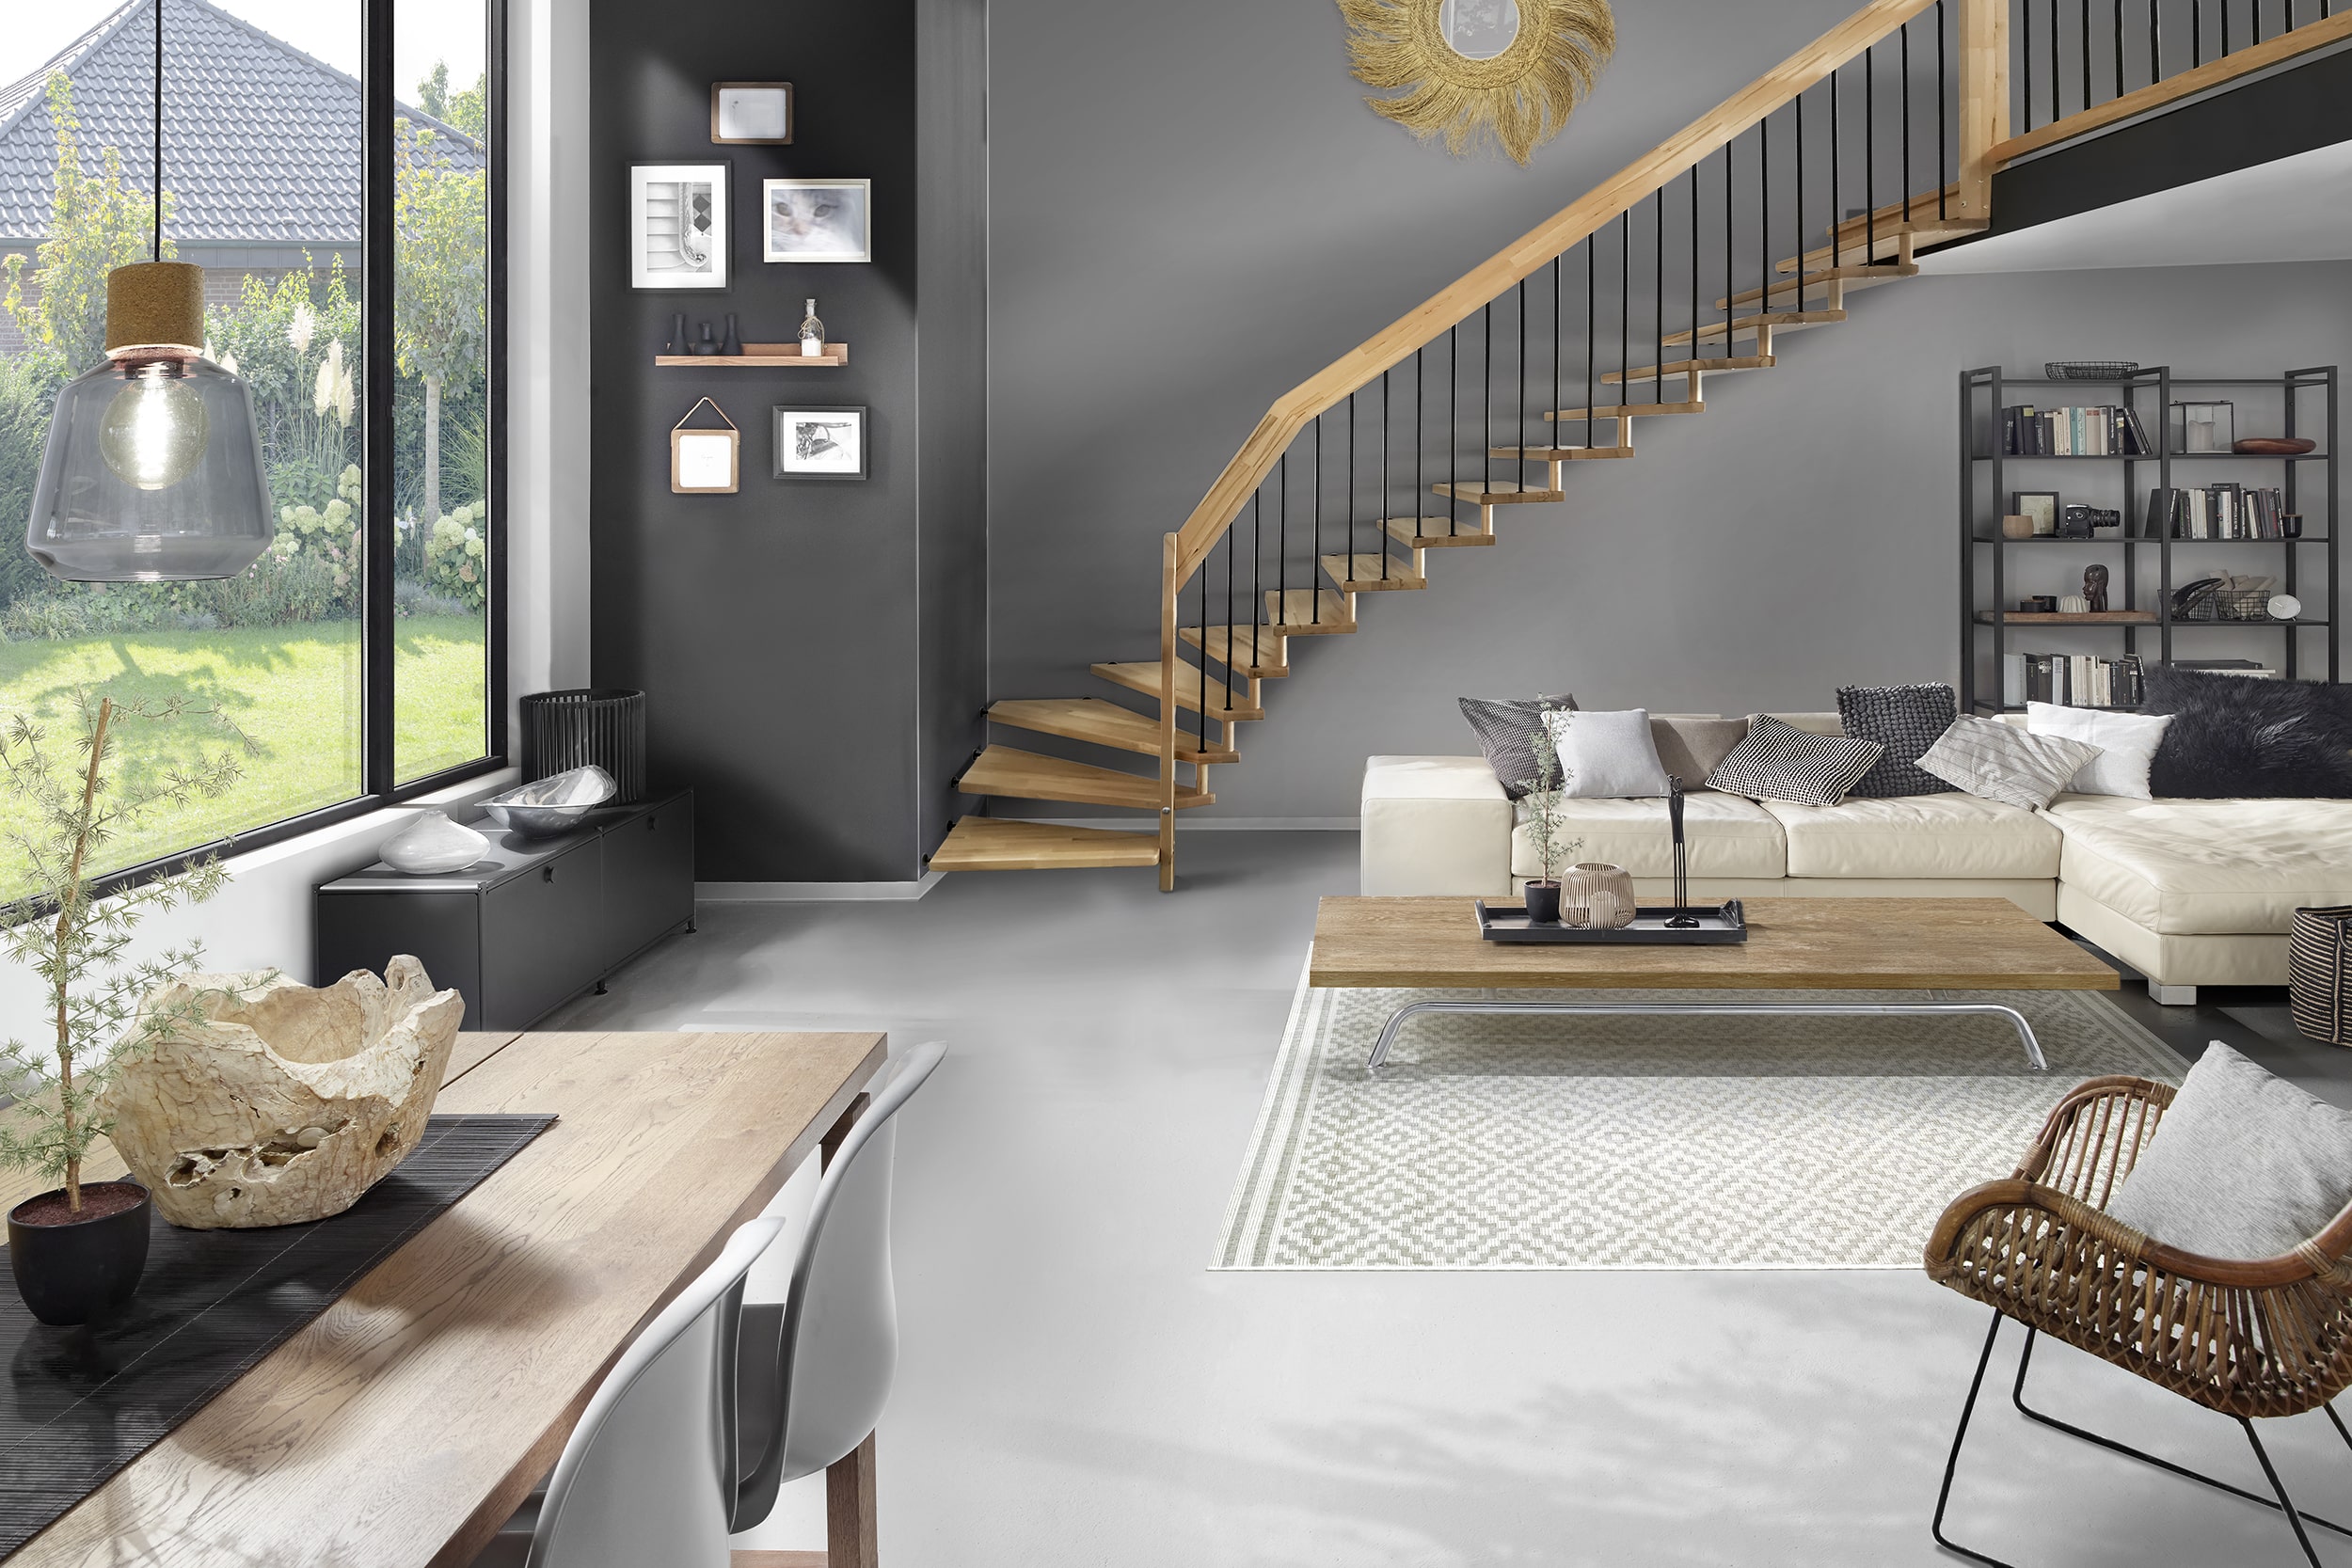 Treppenmeister zeigt ein modernes Wohnzimmer in grau, mit einem Essbereich, einer hellen Couch und Beistelltisch aus Holz, einem Panoramafenster und Holztreppe.